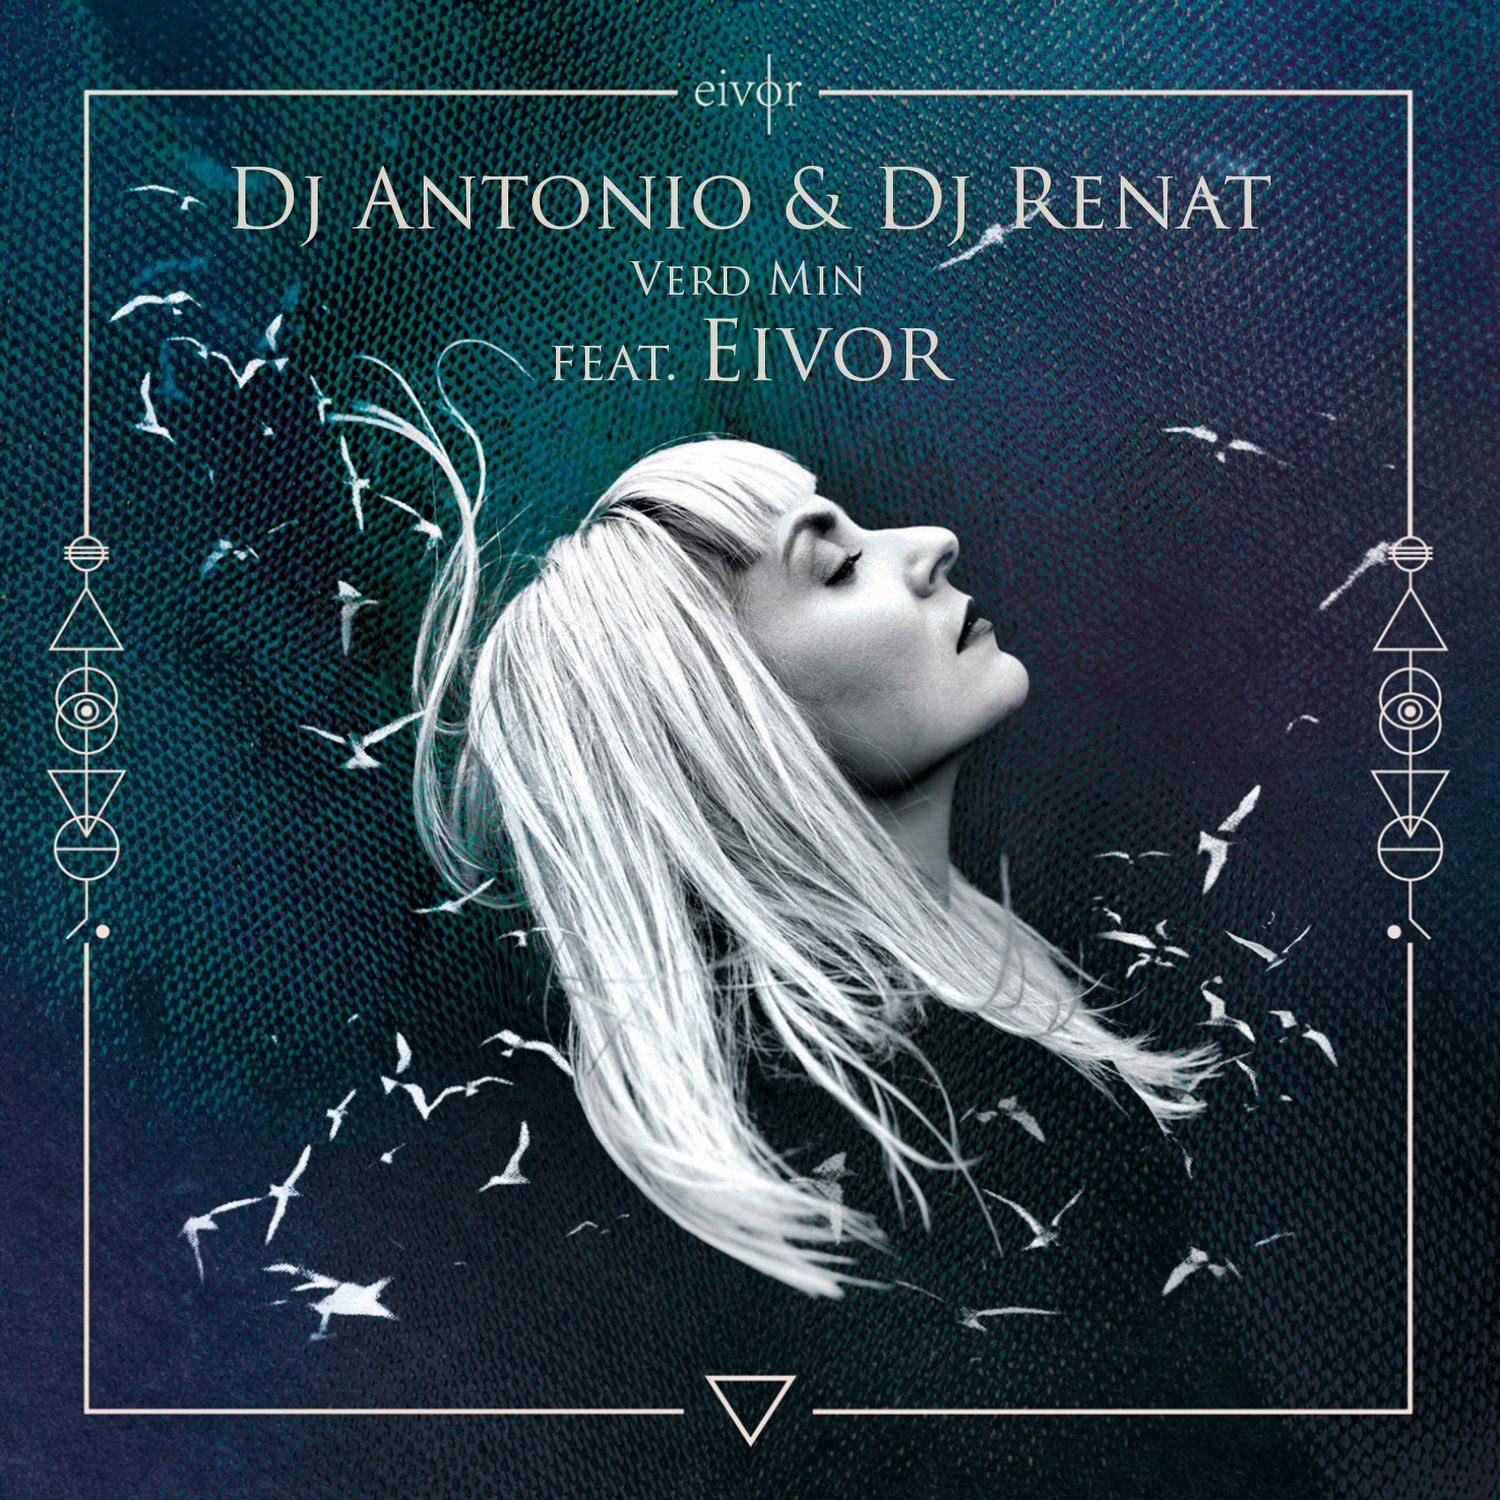 Soo dejiso Dj Antonio & Dj Renat - Verd Min (feat. Eivor) (Club Mix)